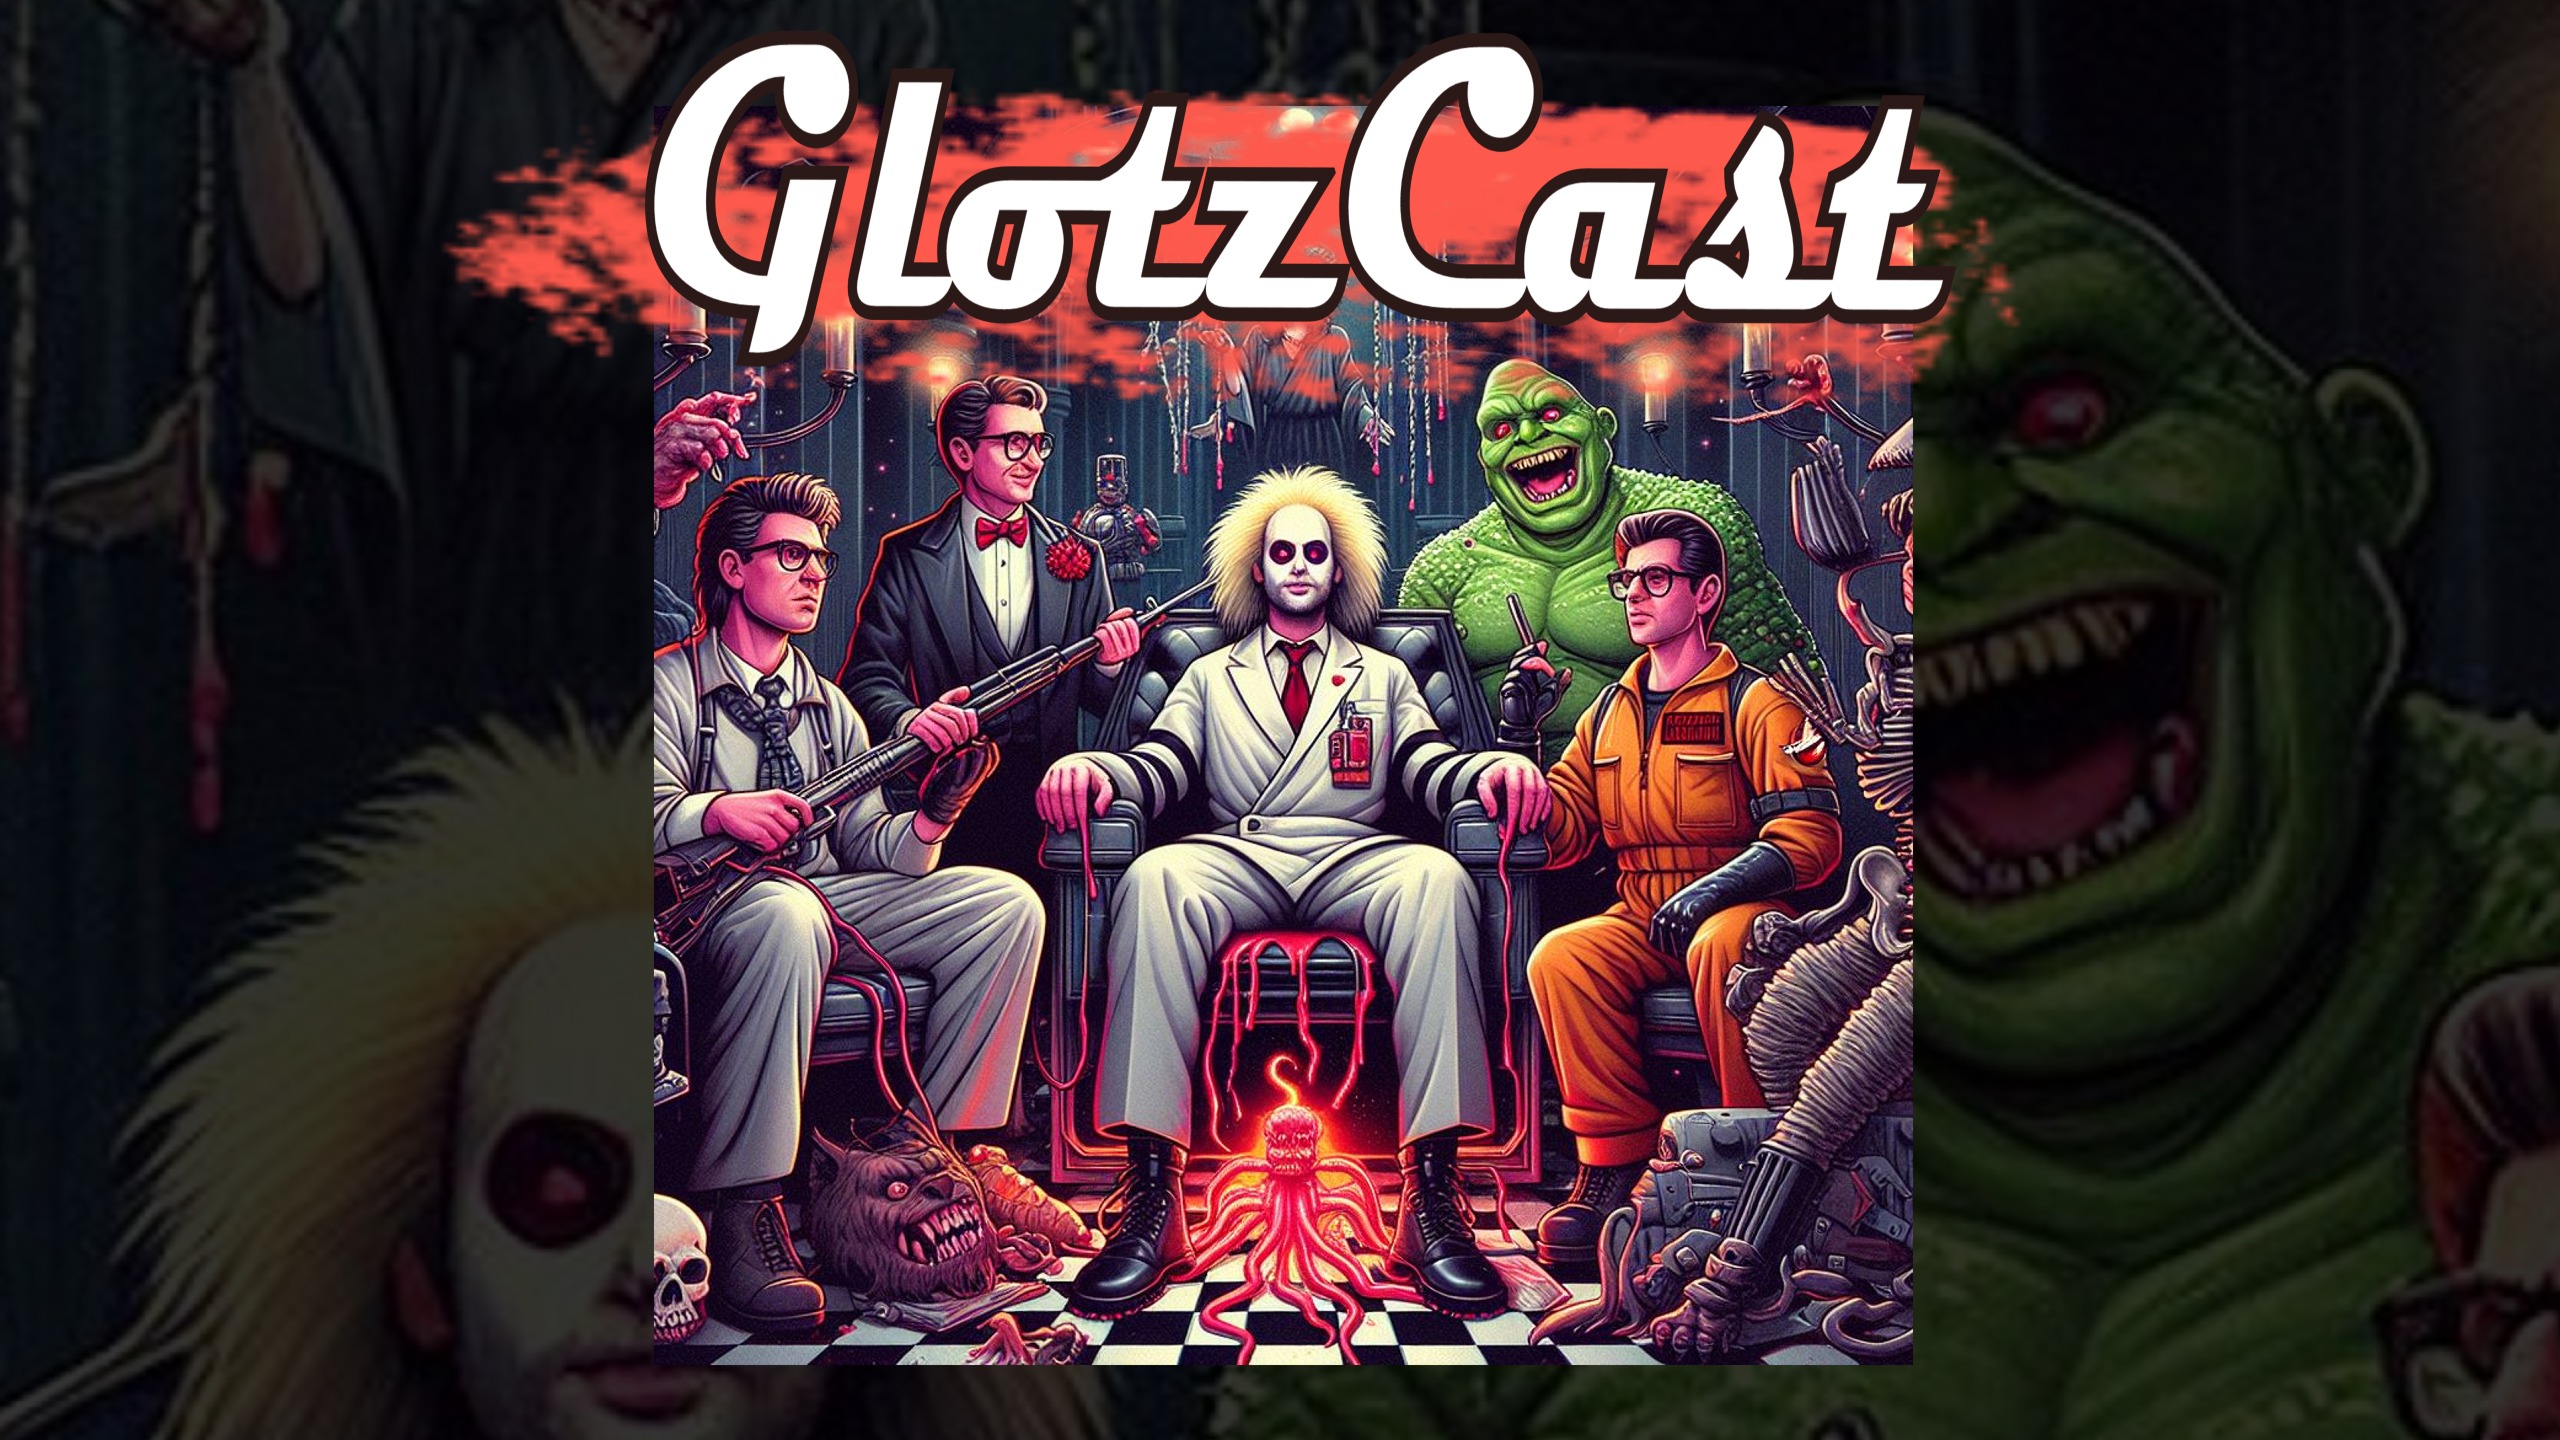 GlotzCast #142 – Beetlejuice, Ghostbusters & die Marvel-Folterkammer des Dr. Hasselhoff